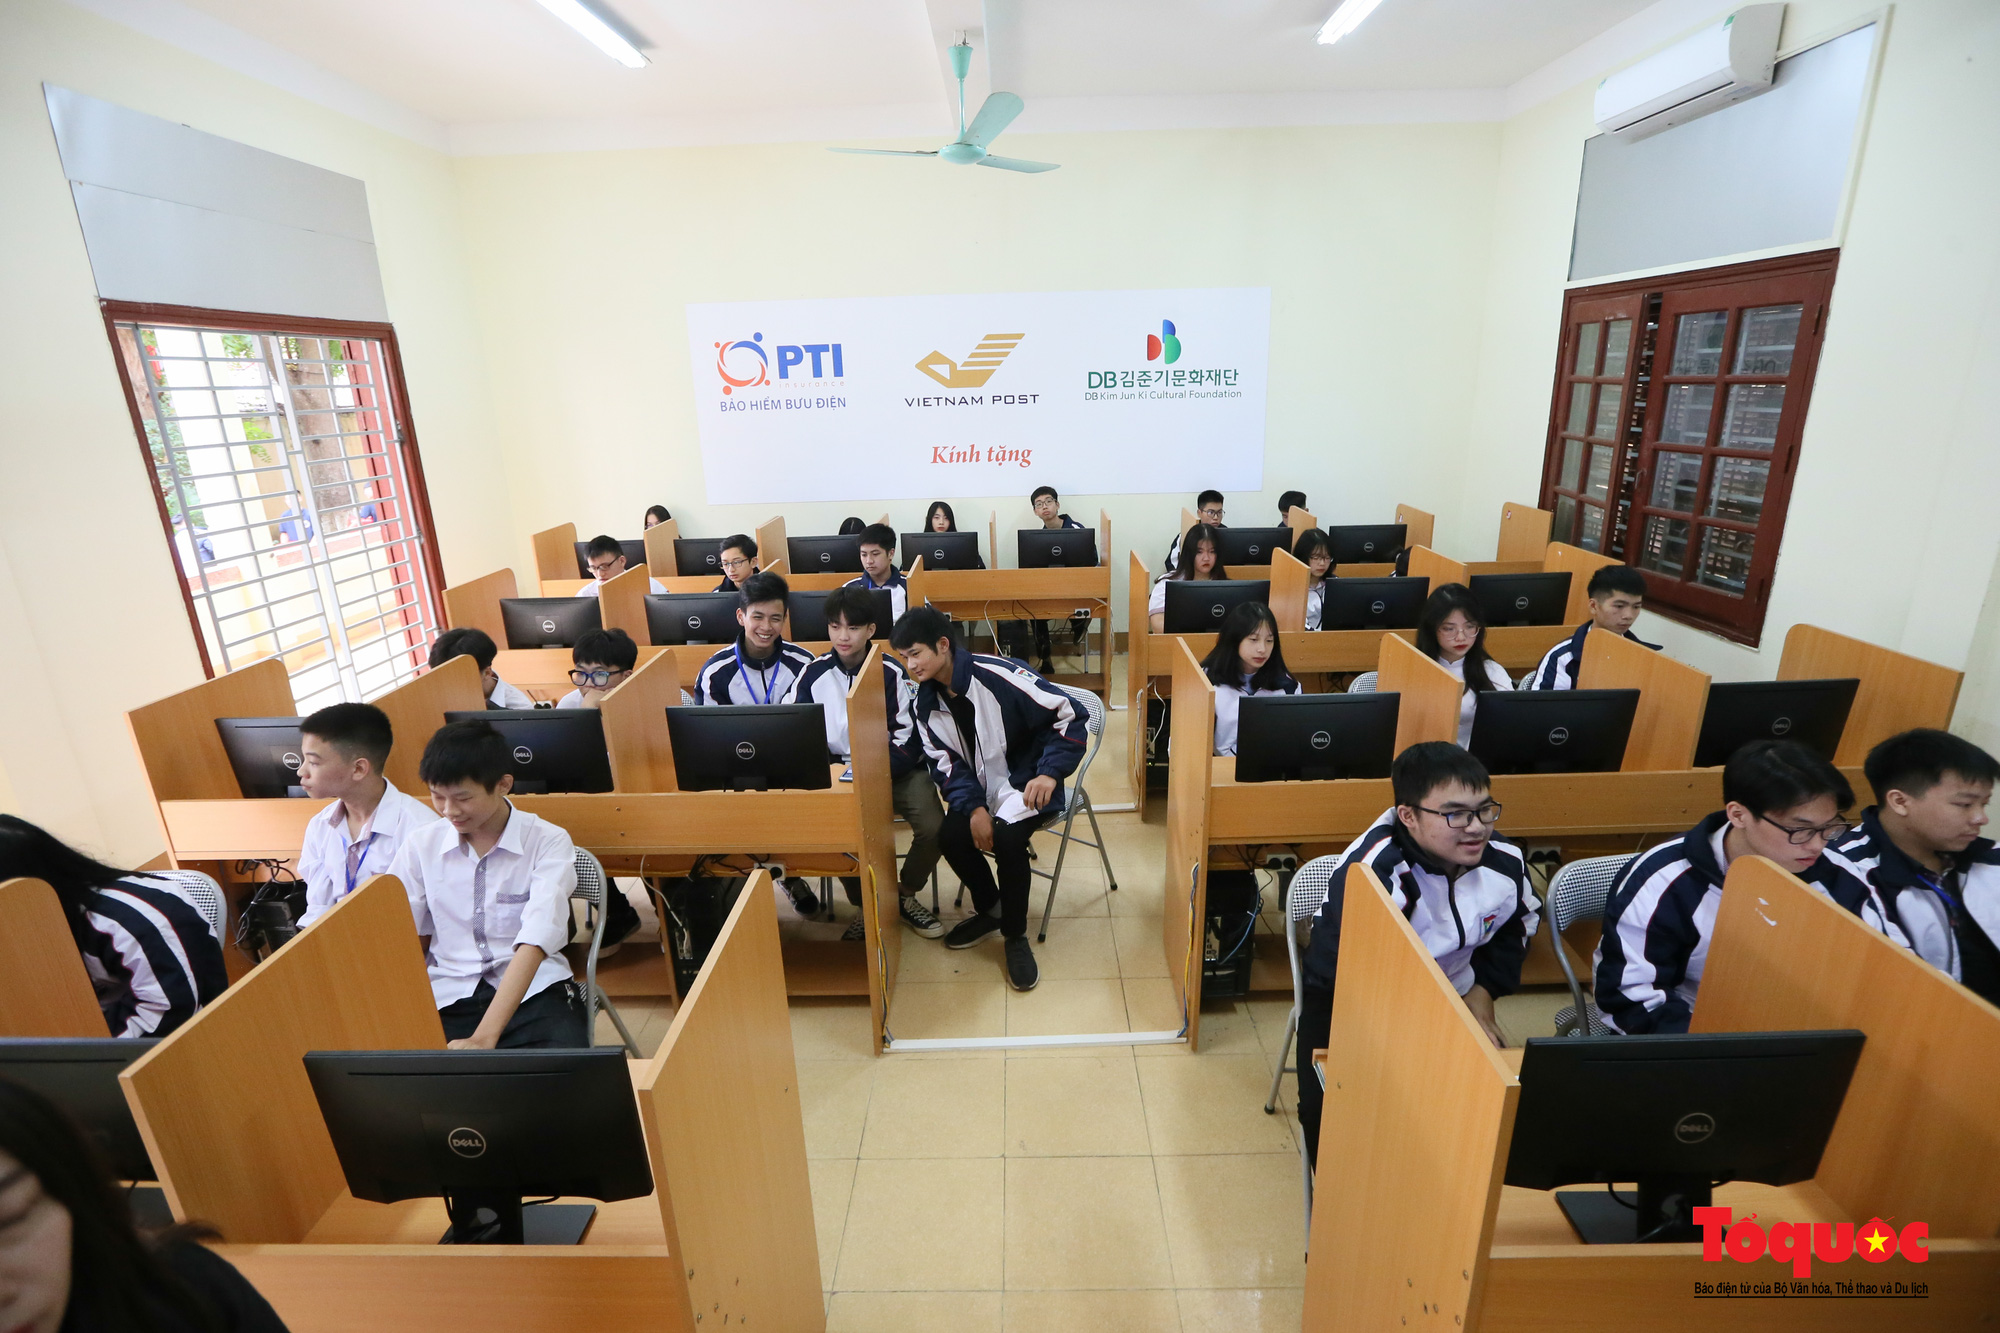 PTI hỗ trợ thiết bị giảng dạy công nghệ hiện đại cho nhiều trường học - Ảnh 5.